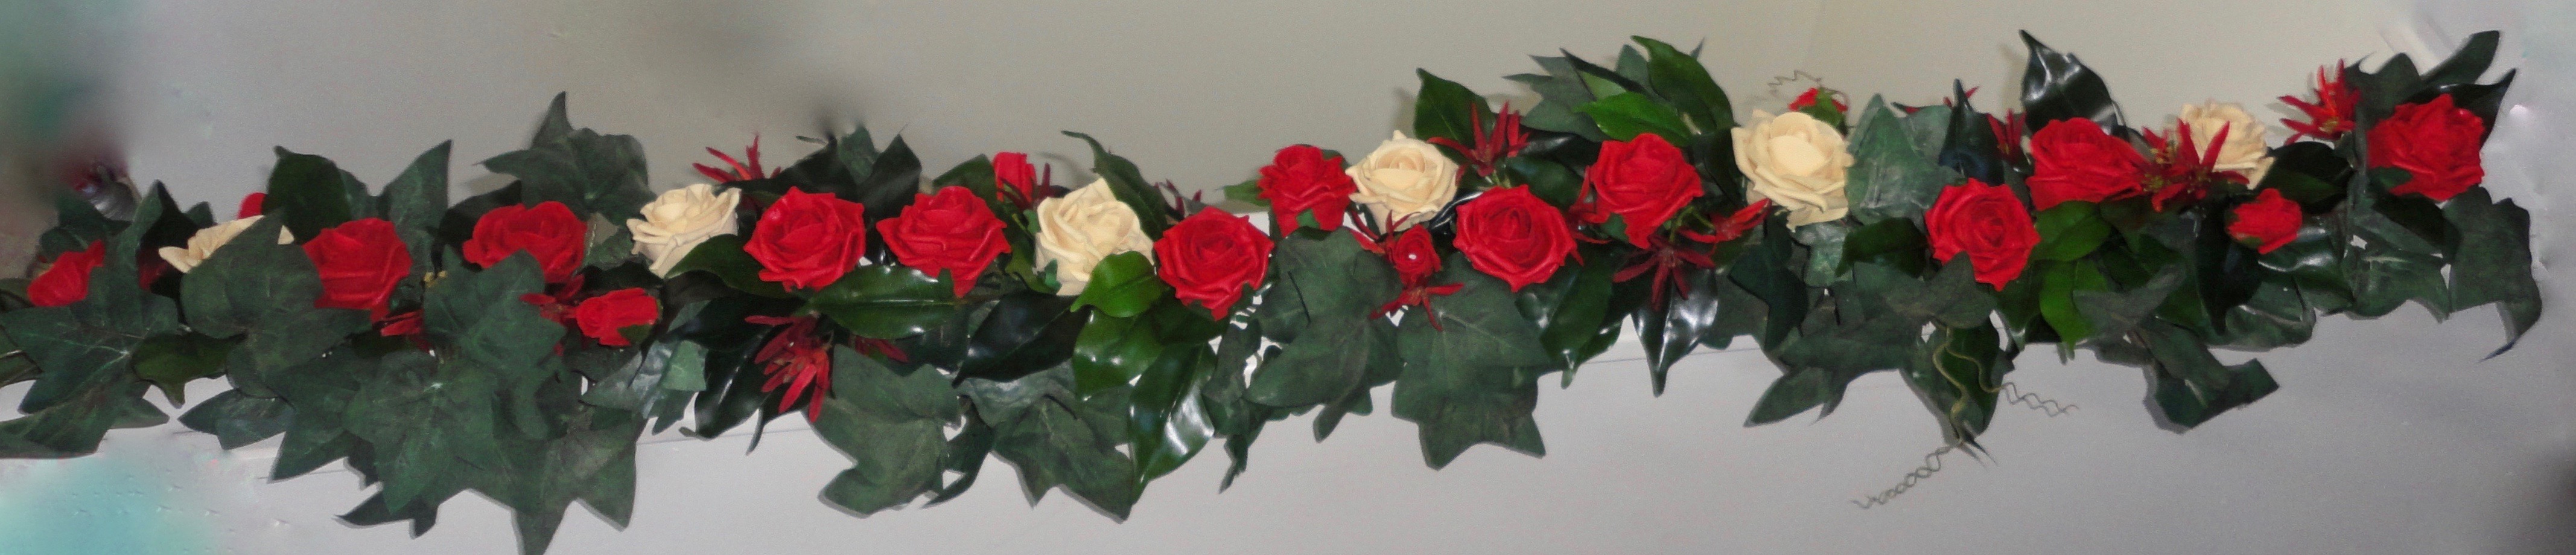 Wedding Garlands - red & Champagne rose wedding garland